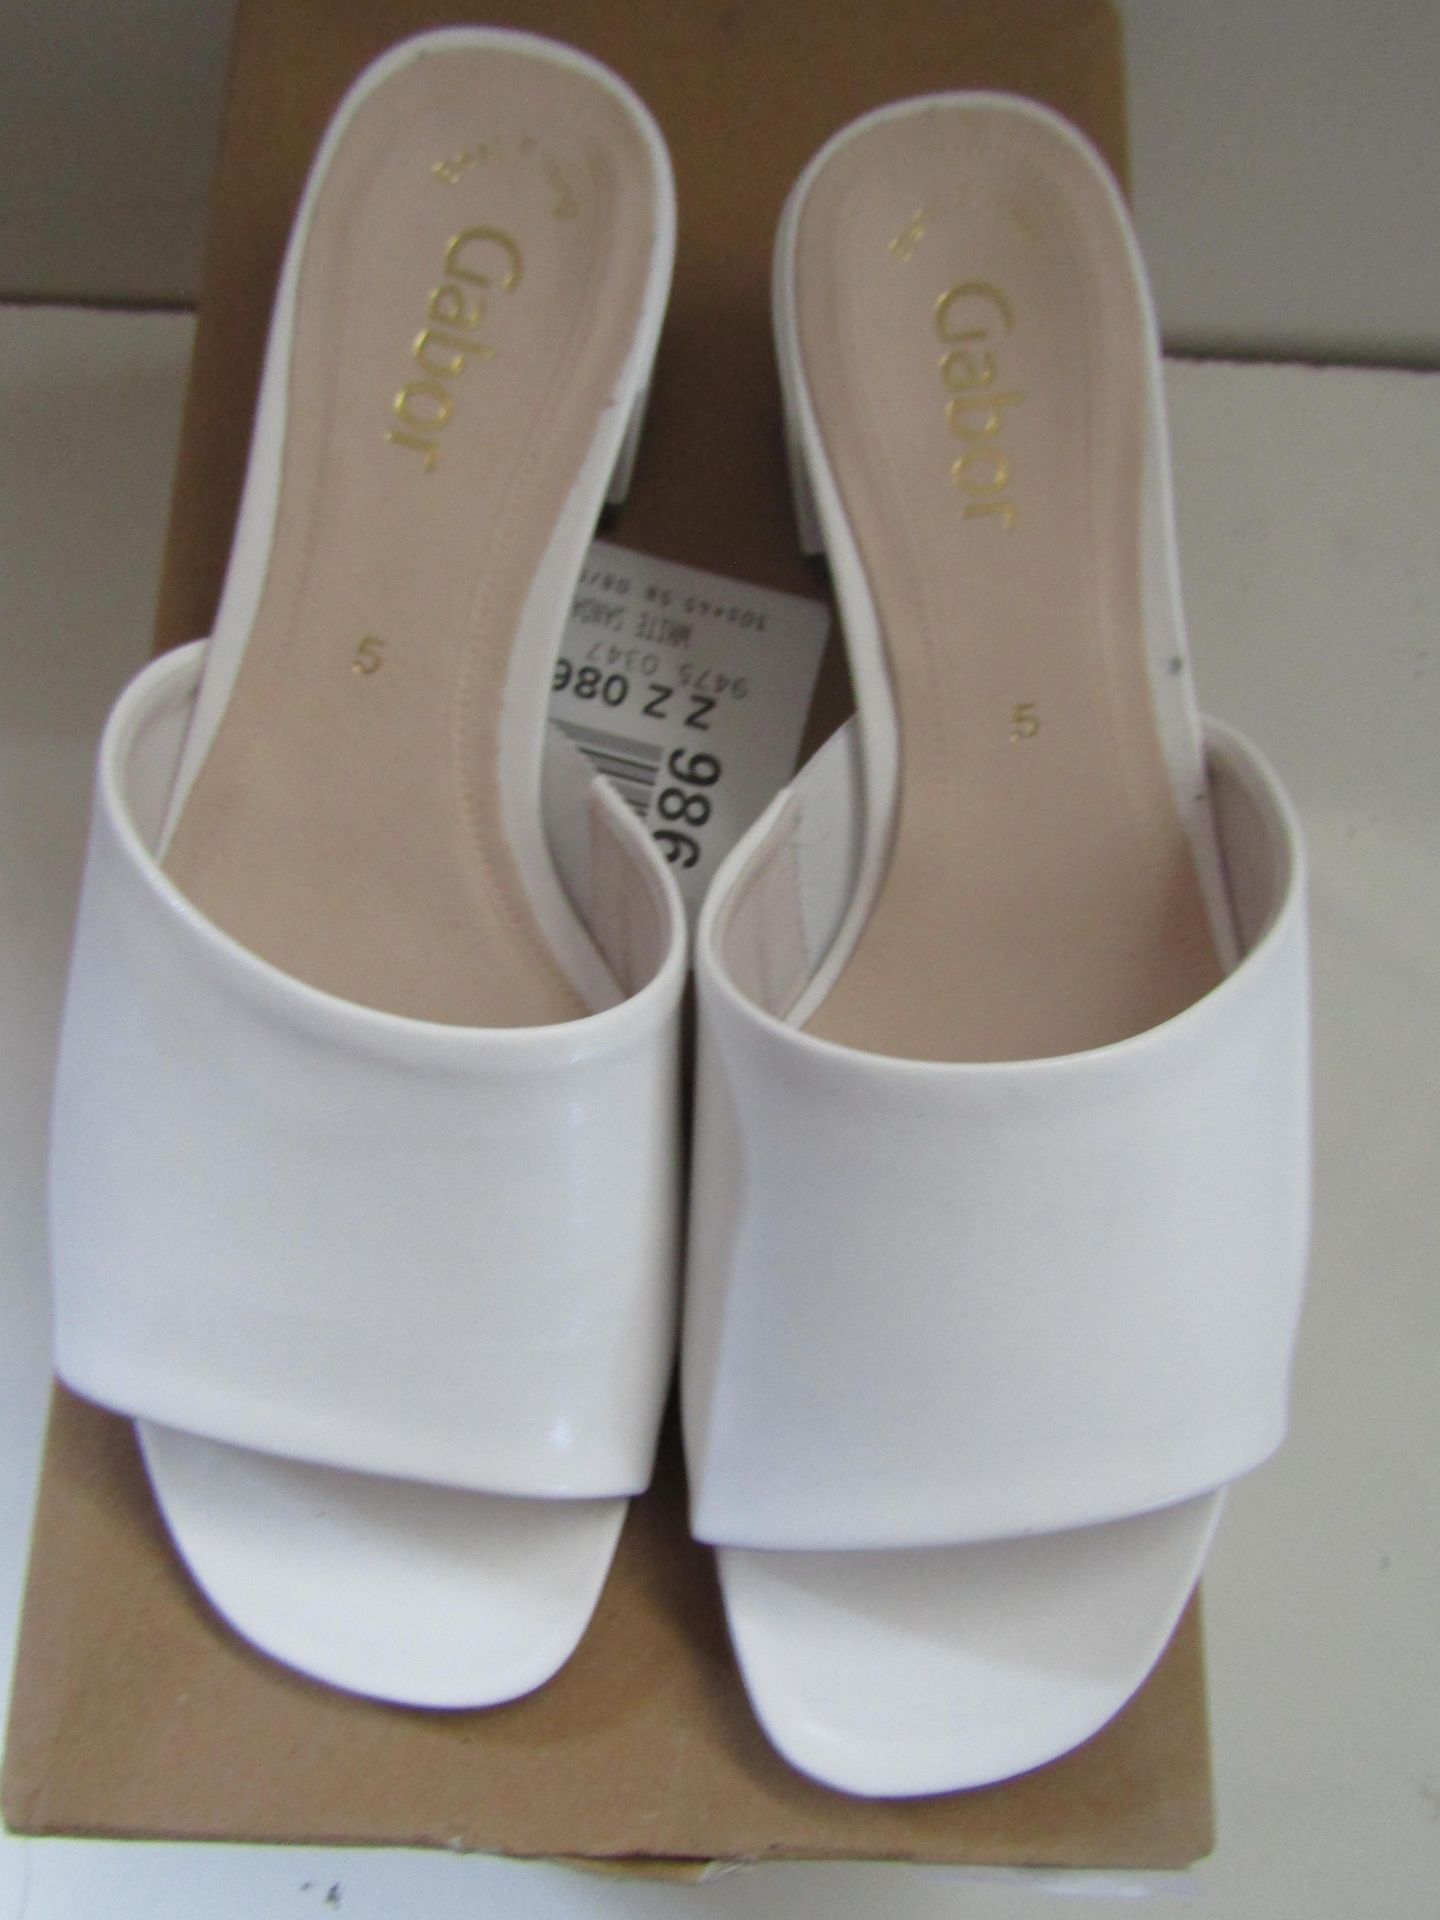 Gabor White Slip on Shoe Size 5 New & Boxed - Image 3 of 3